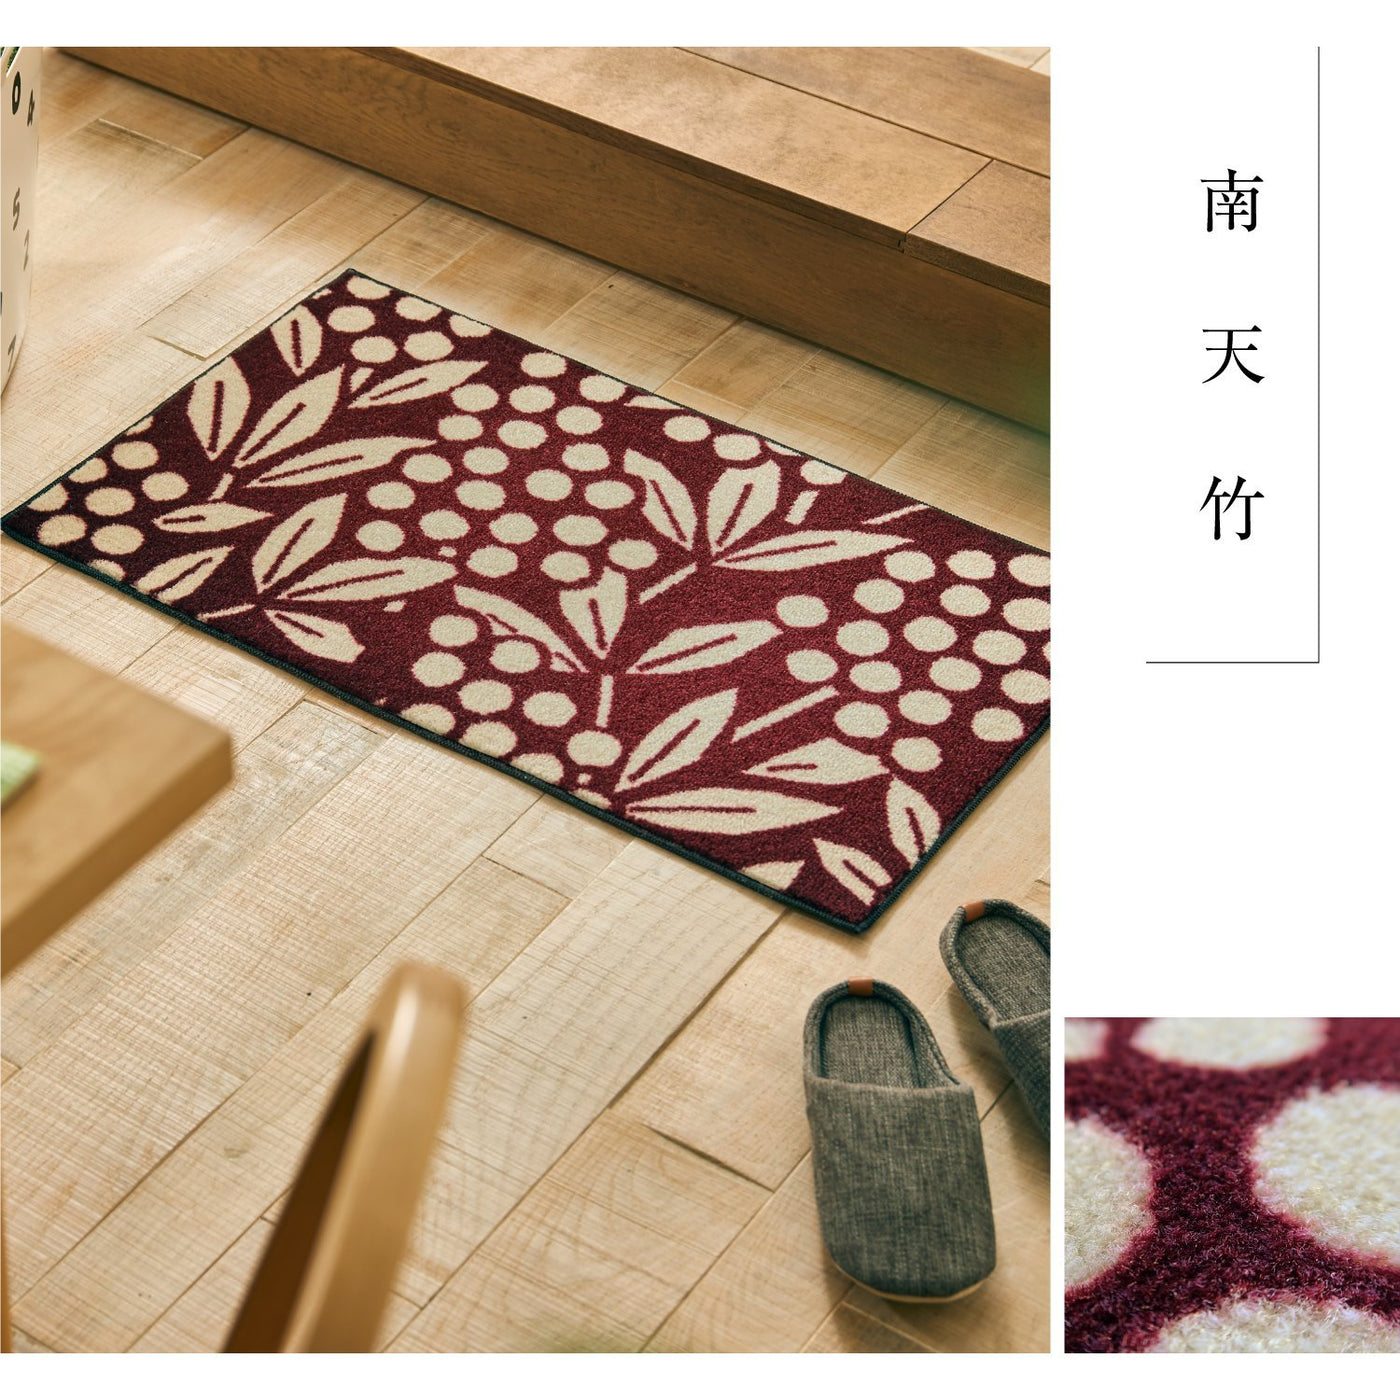 日本の四季や風情をポップに表現したテキスタイルデザインマット Sou Sou 南天竹 Toco Life